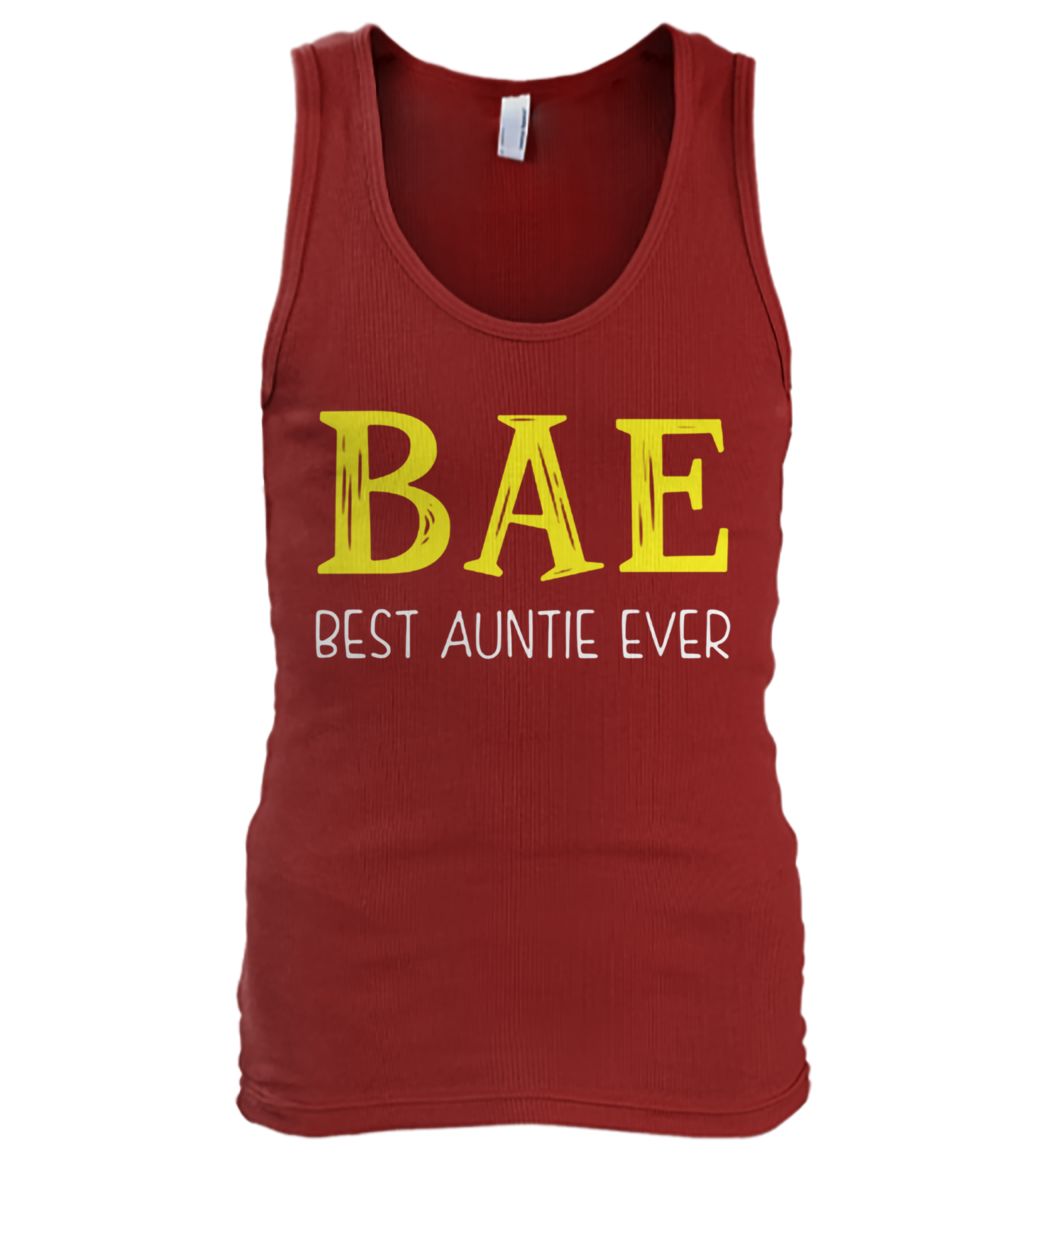 Bae best auntie ever men's tank top